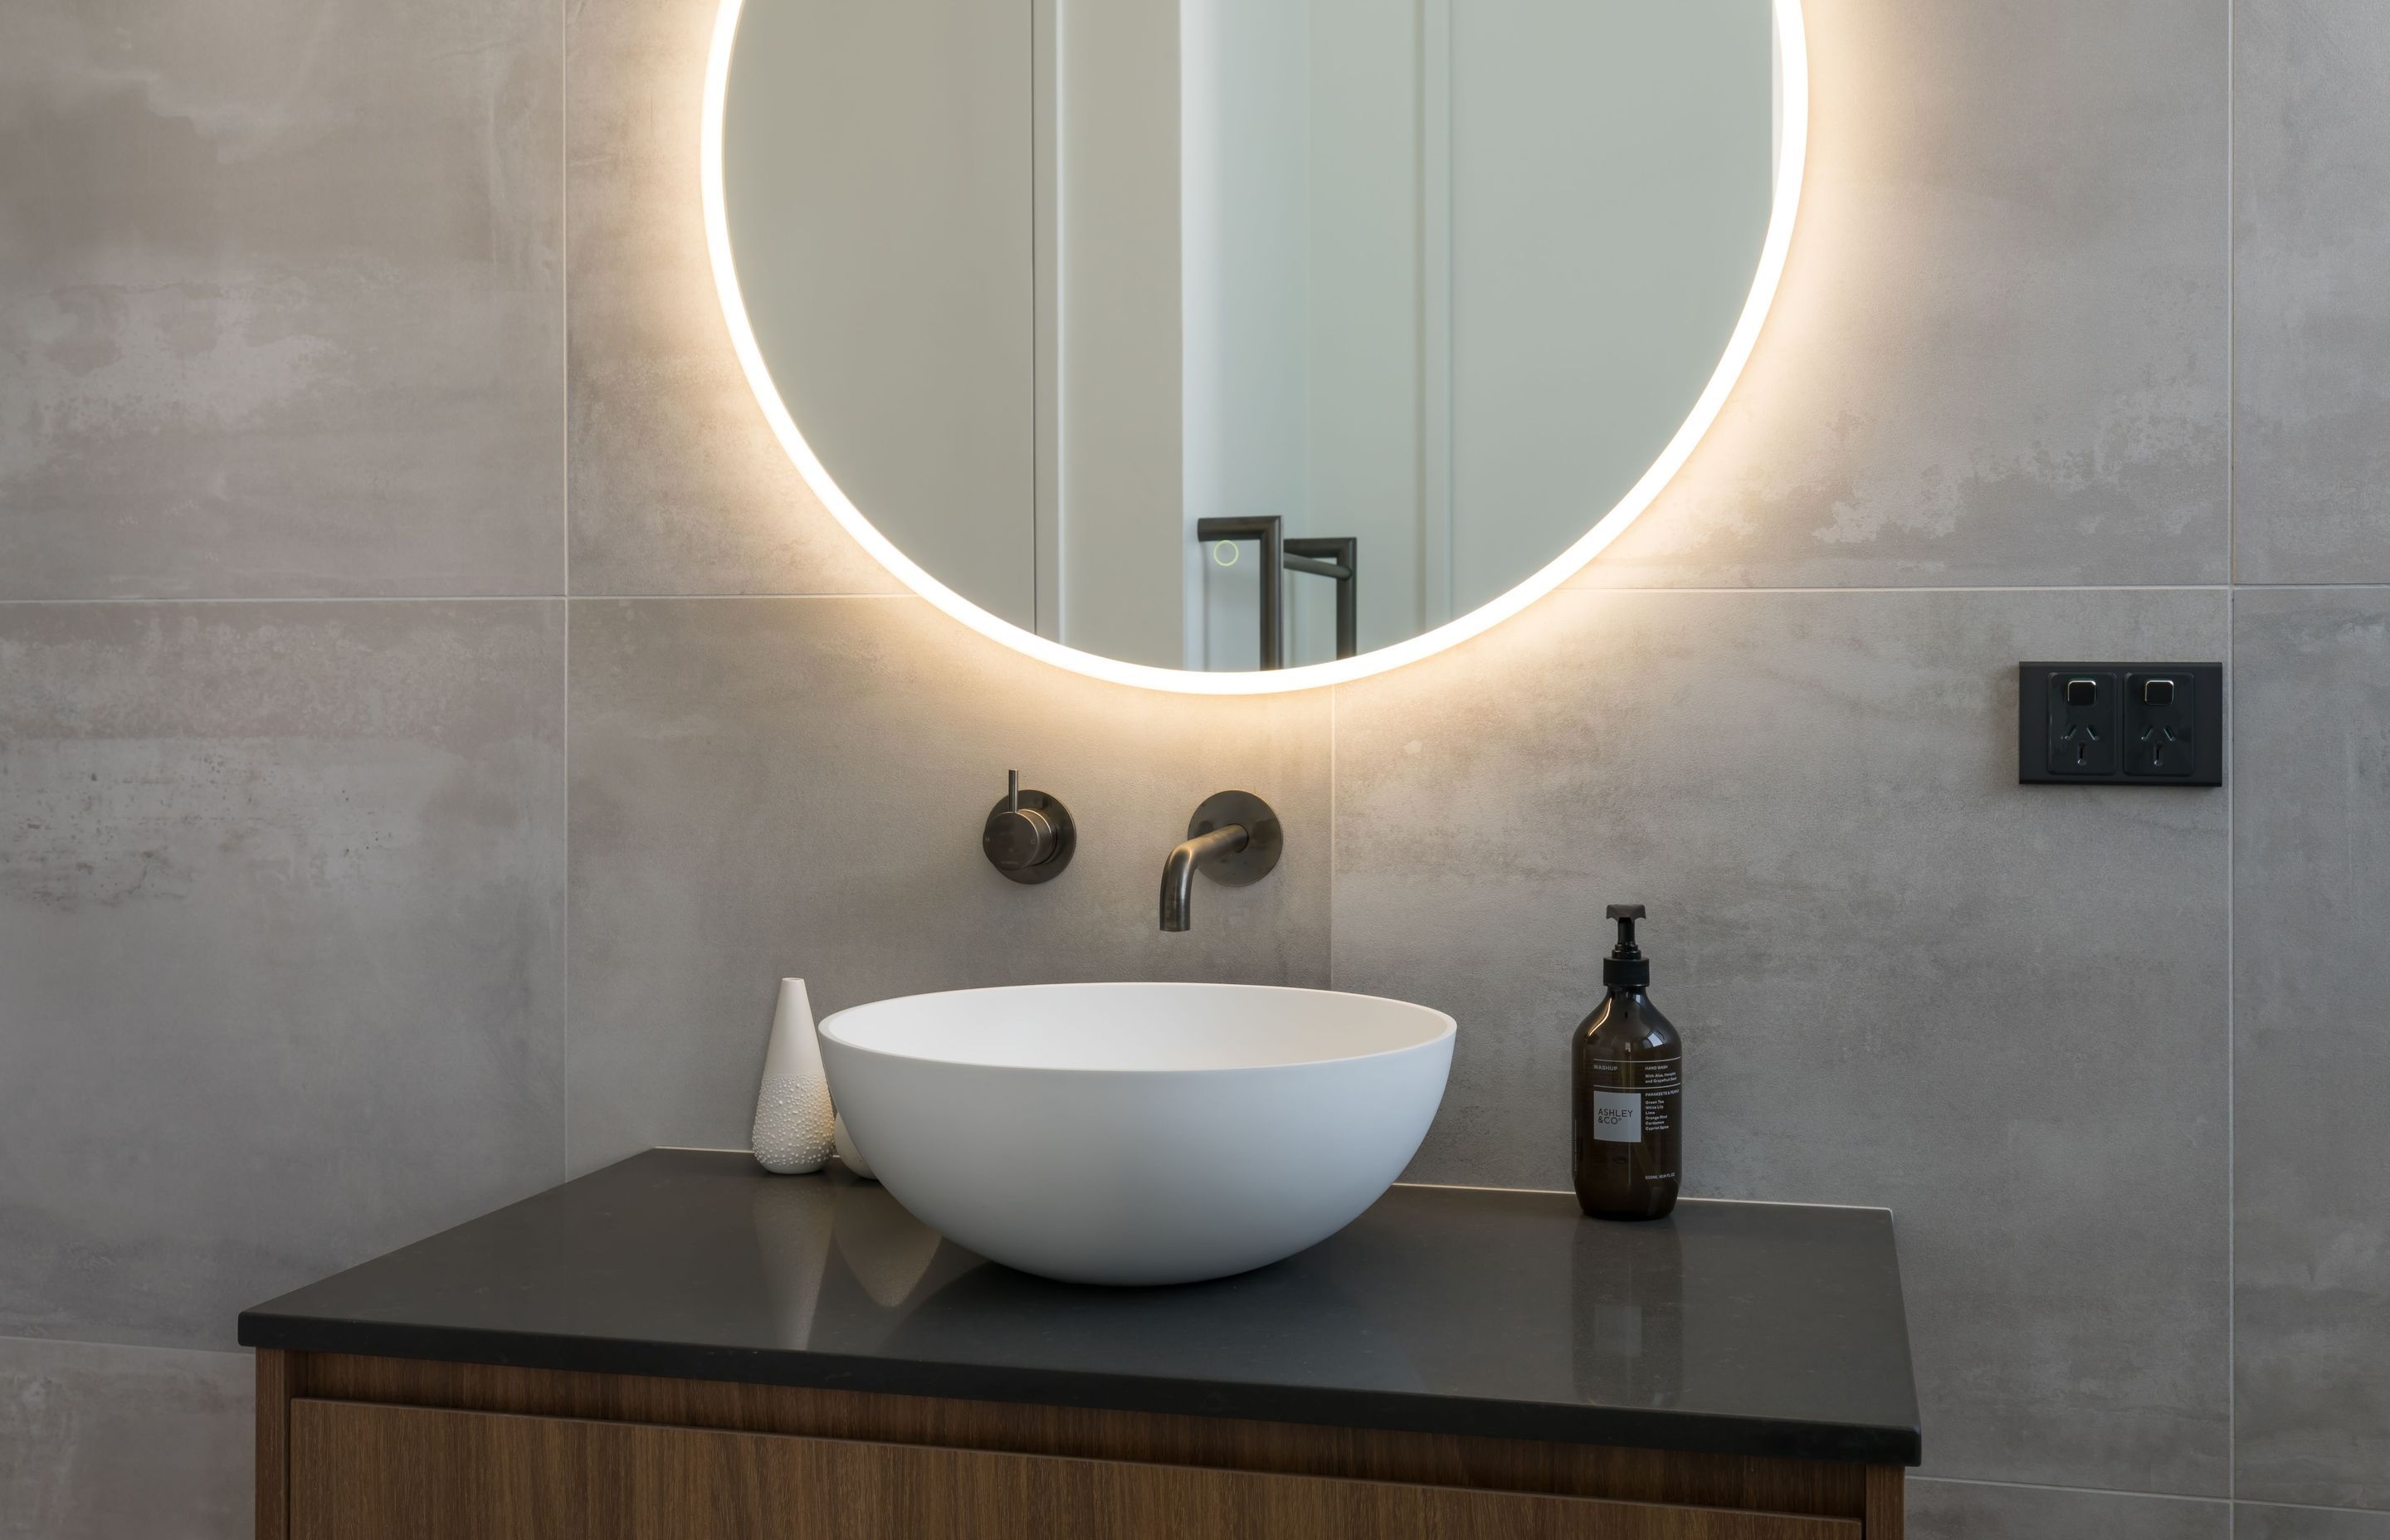 Middle Floor Bathroom - single vessel basin on custom made timber vanity